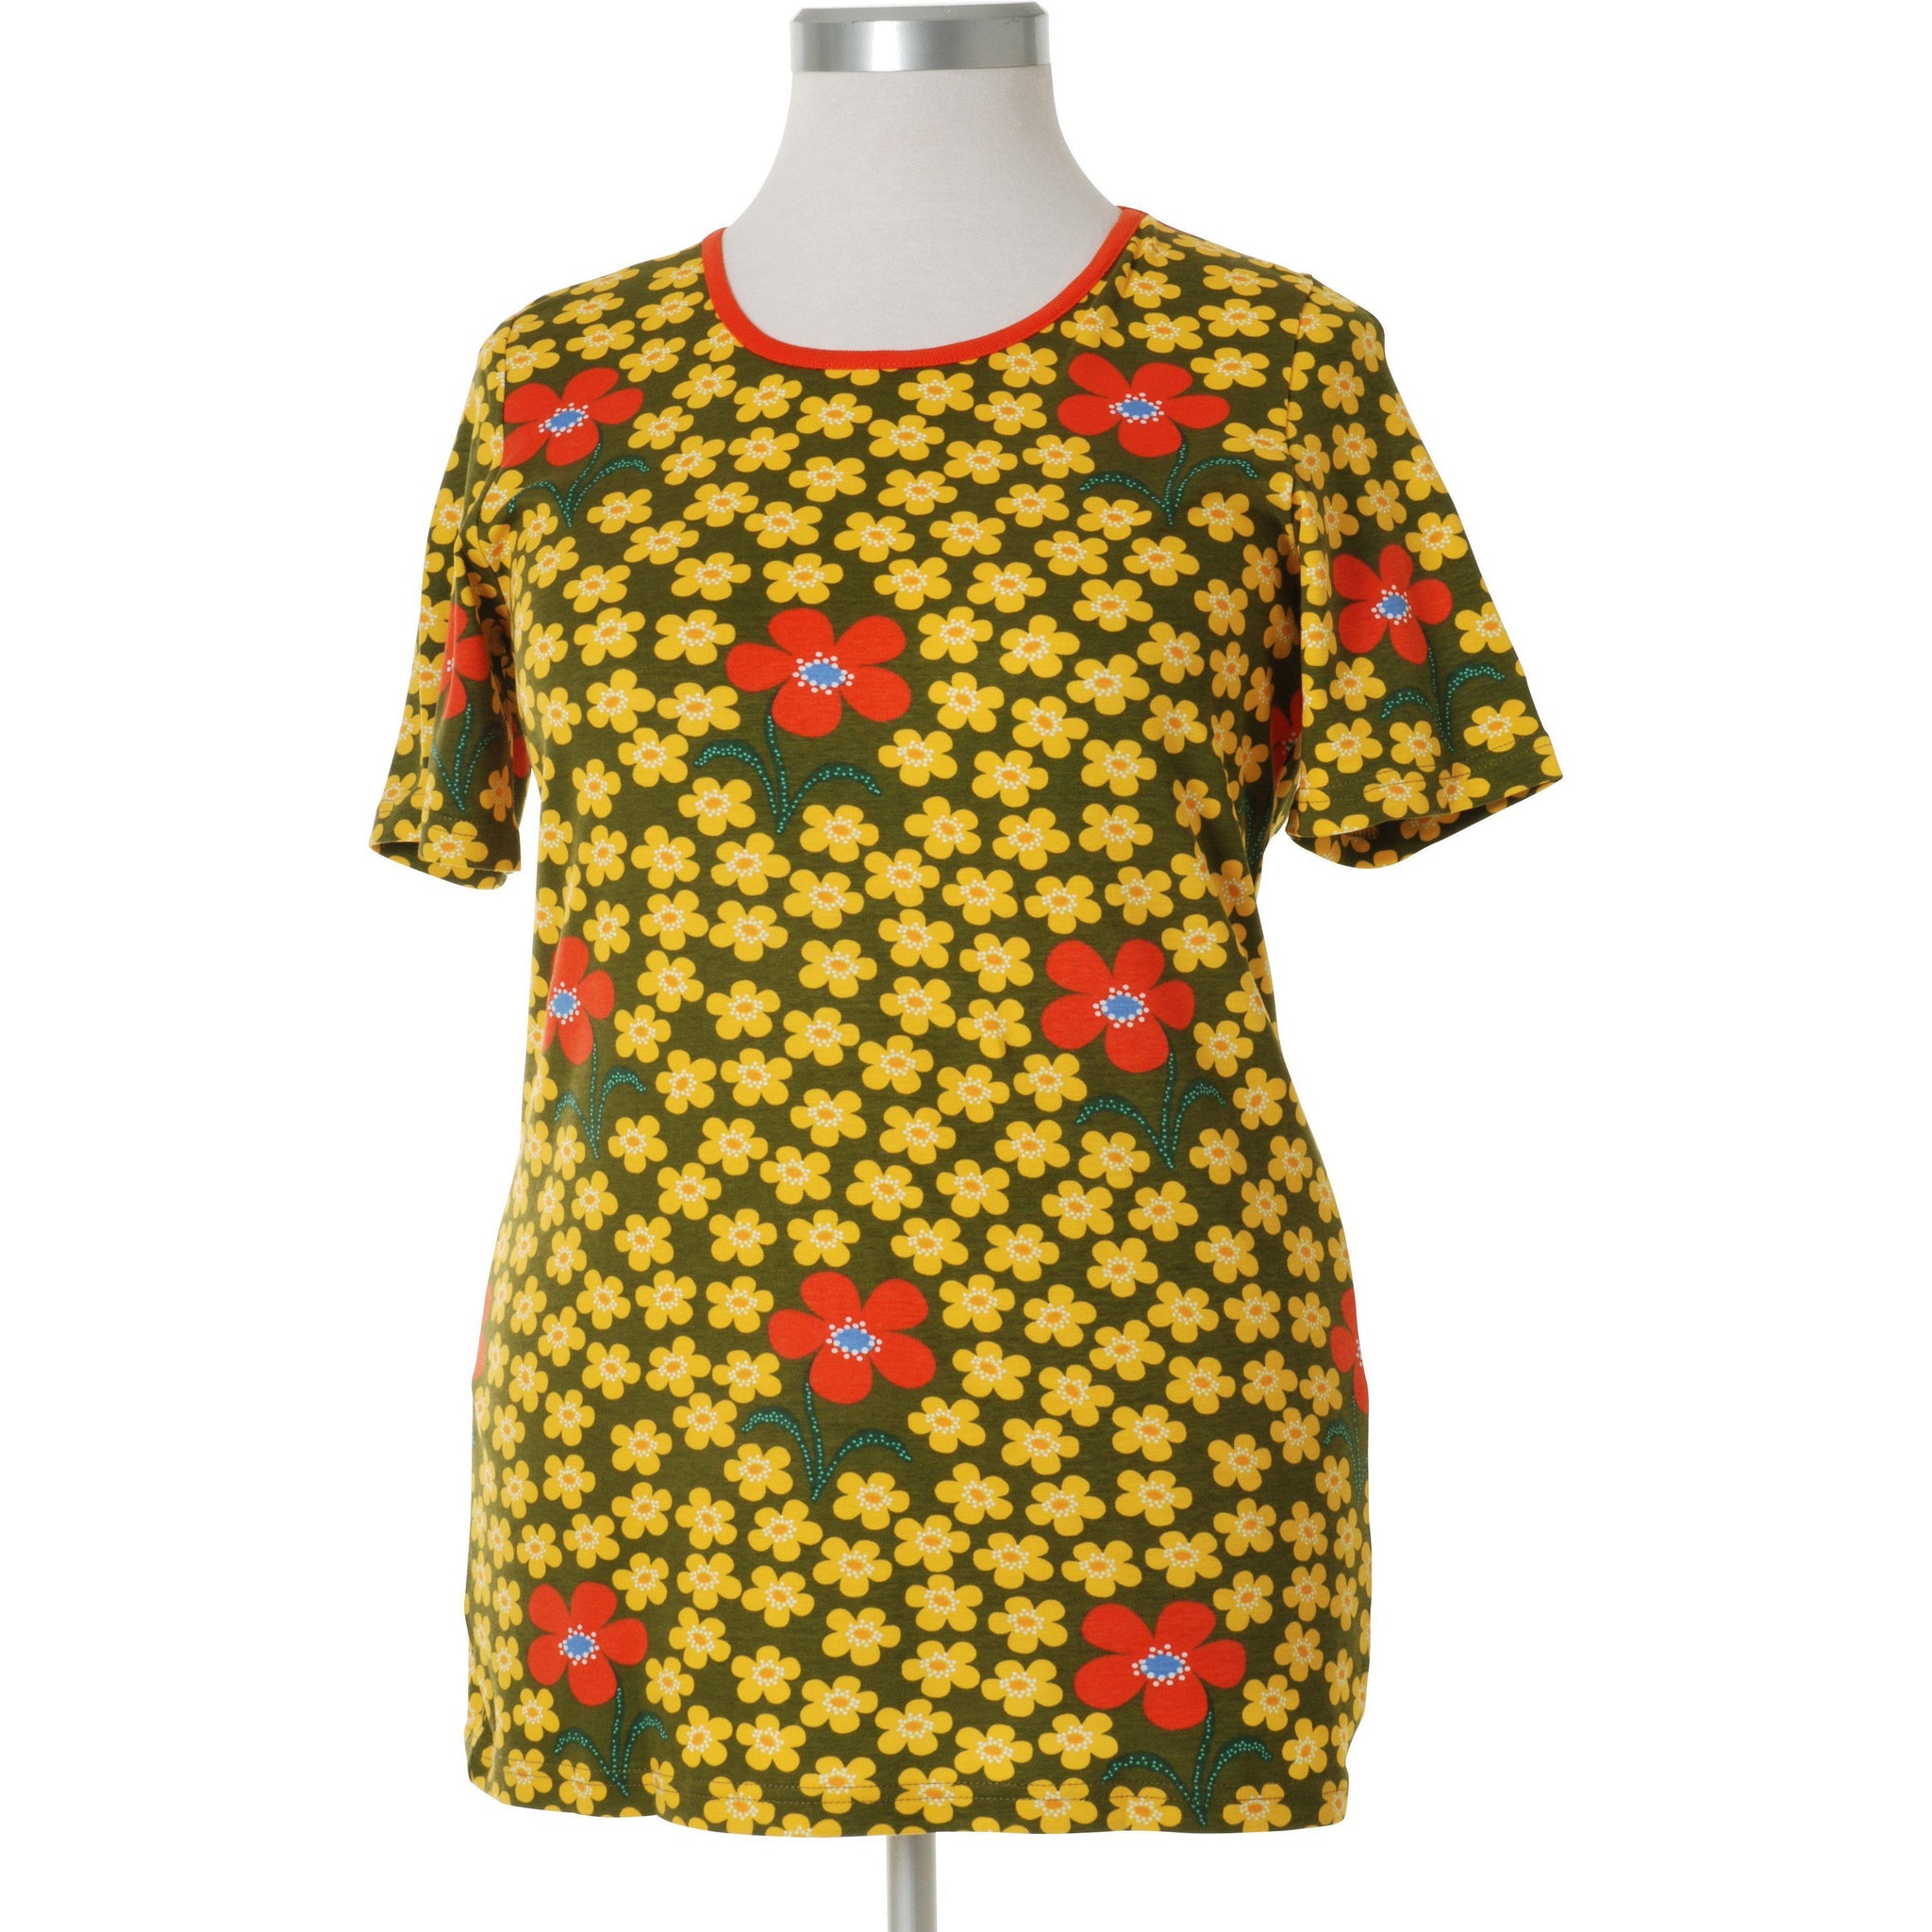 DUNS Sweden - Flower (Olive) Womens Short Sleeved Top